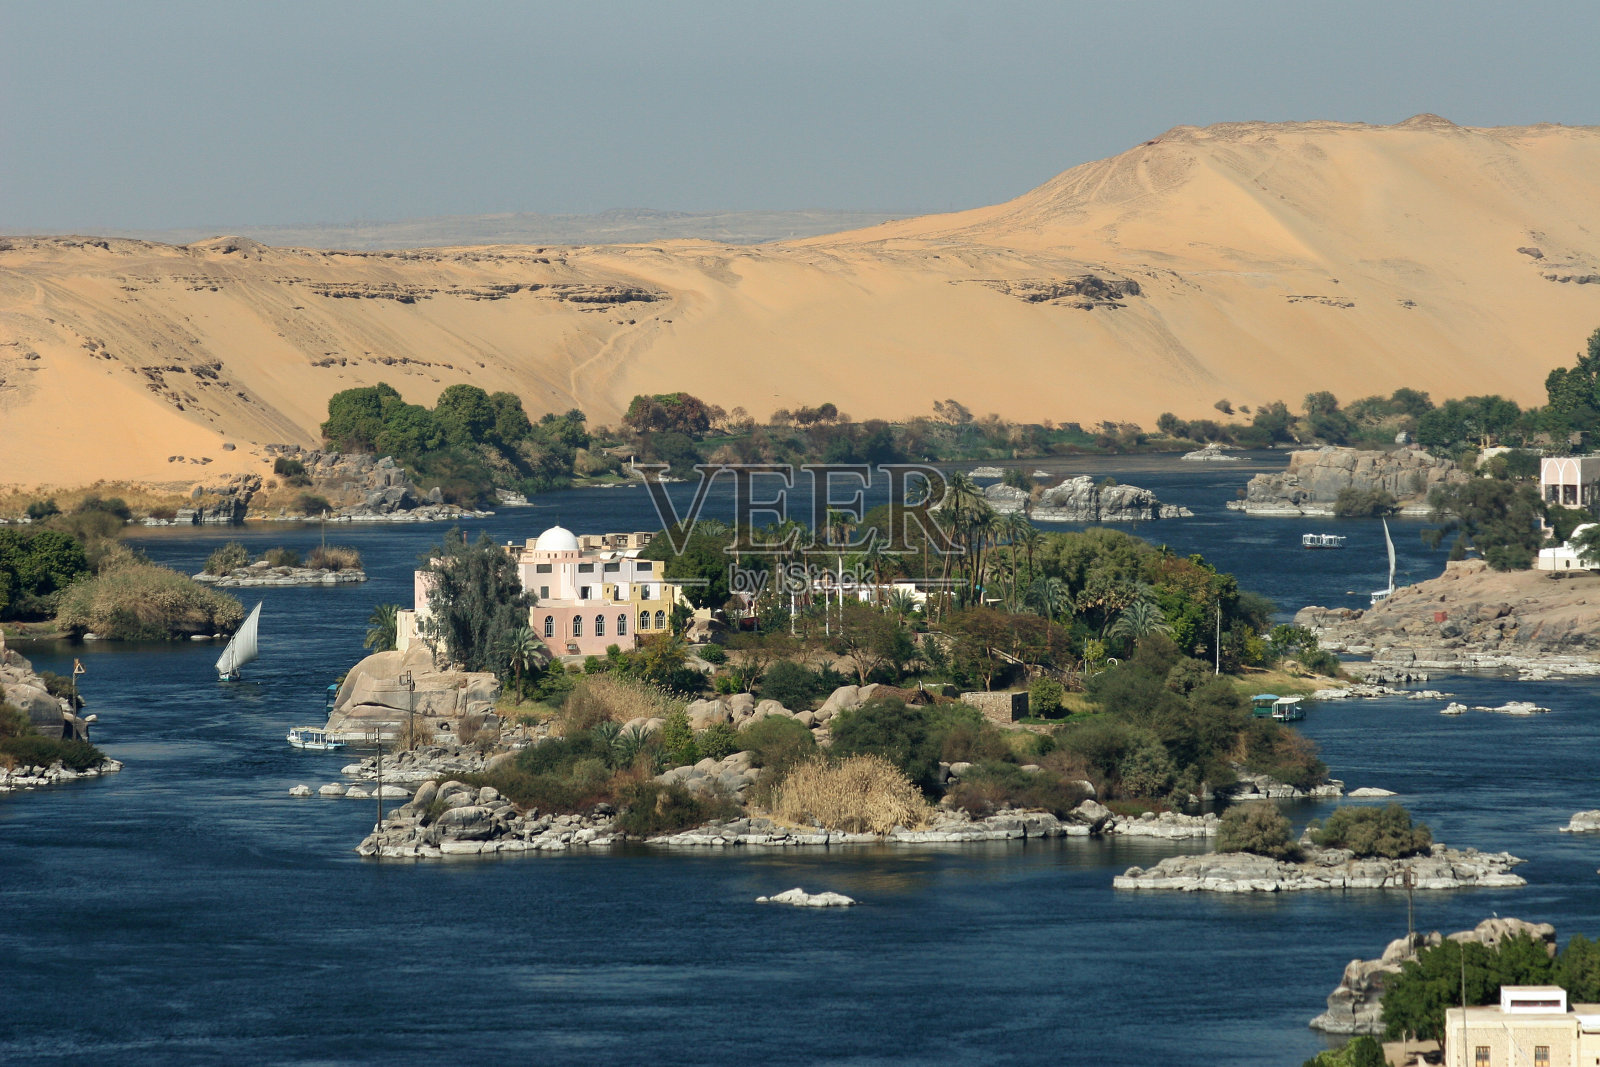 尼罗河、阿斯旺、埃及、撒哈拉沙漠、小帆船照片摄影图片